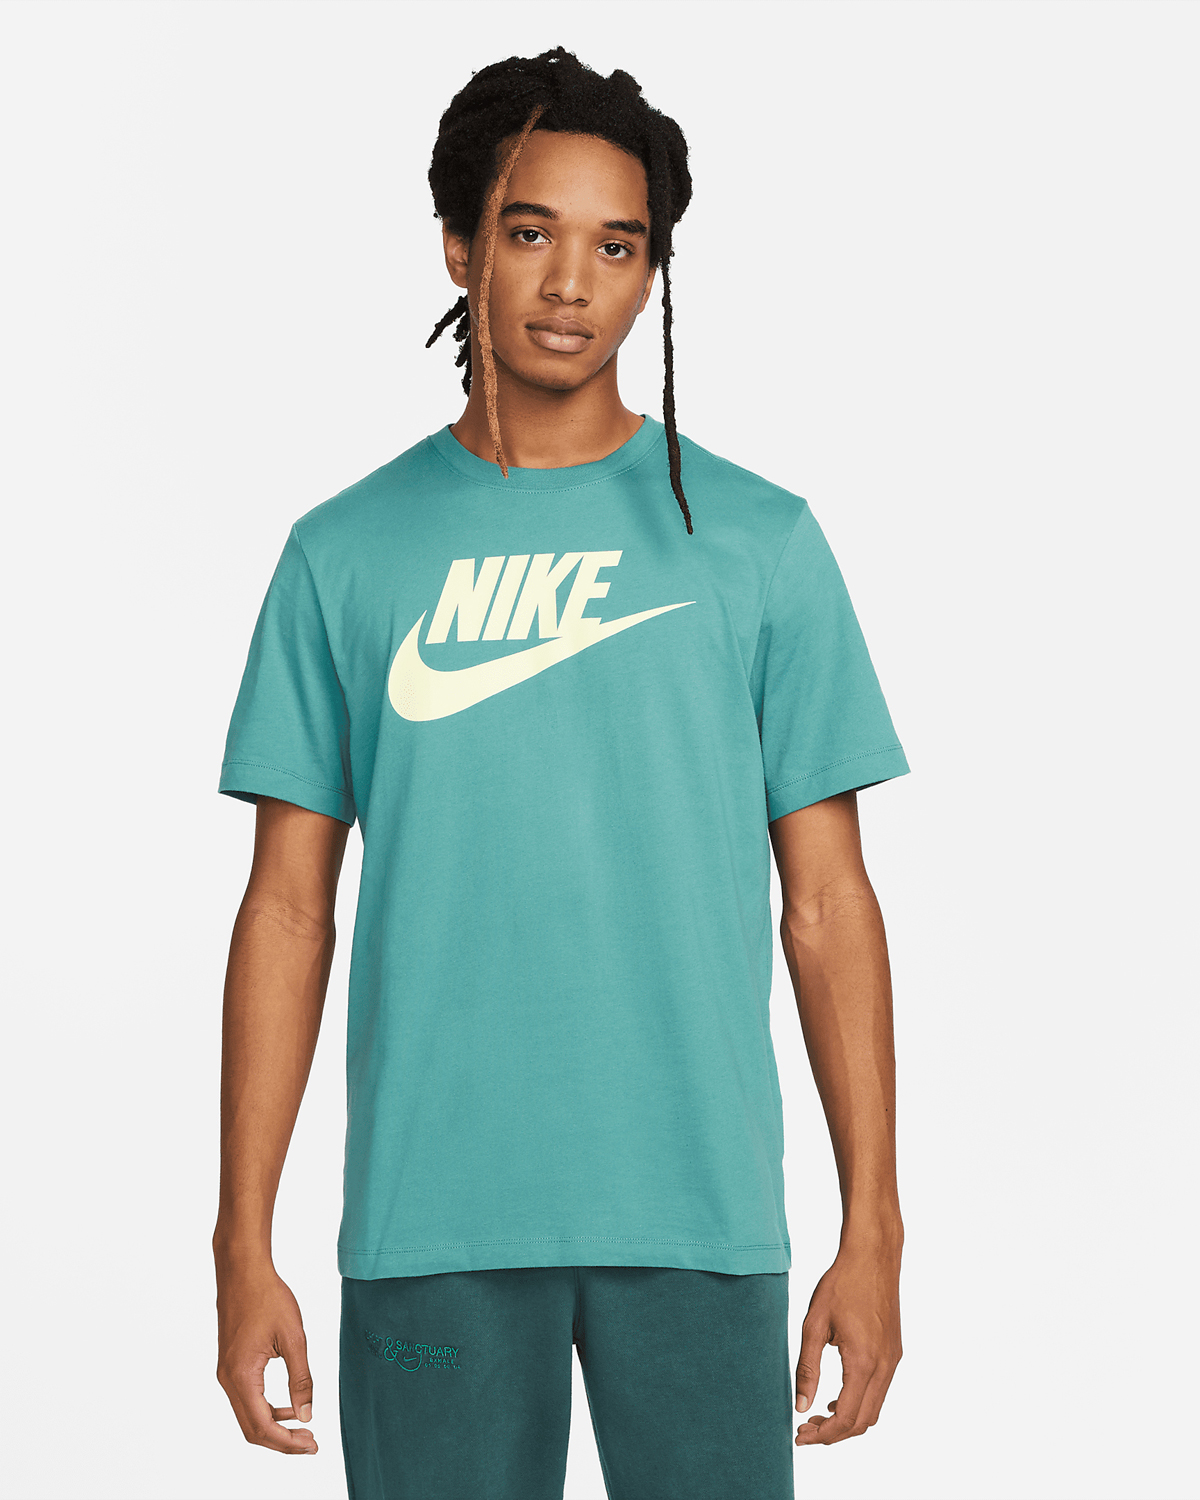 Nike-Sportswear-T-Shirt-Mineral-Teal